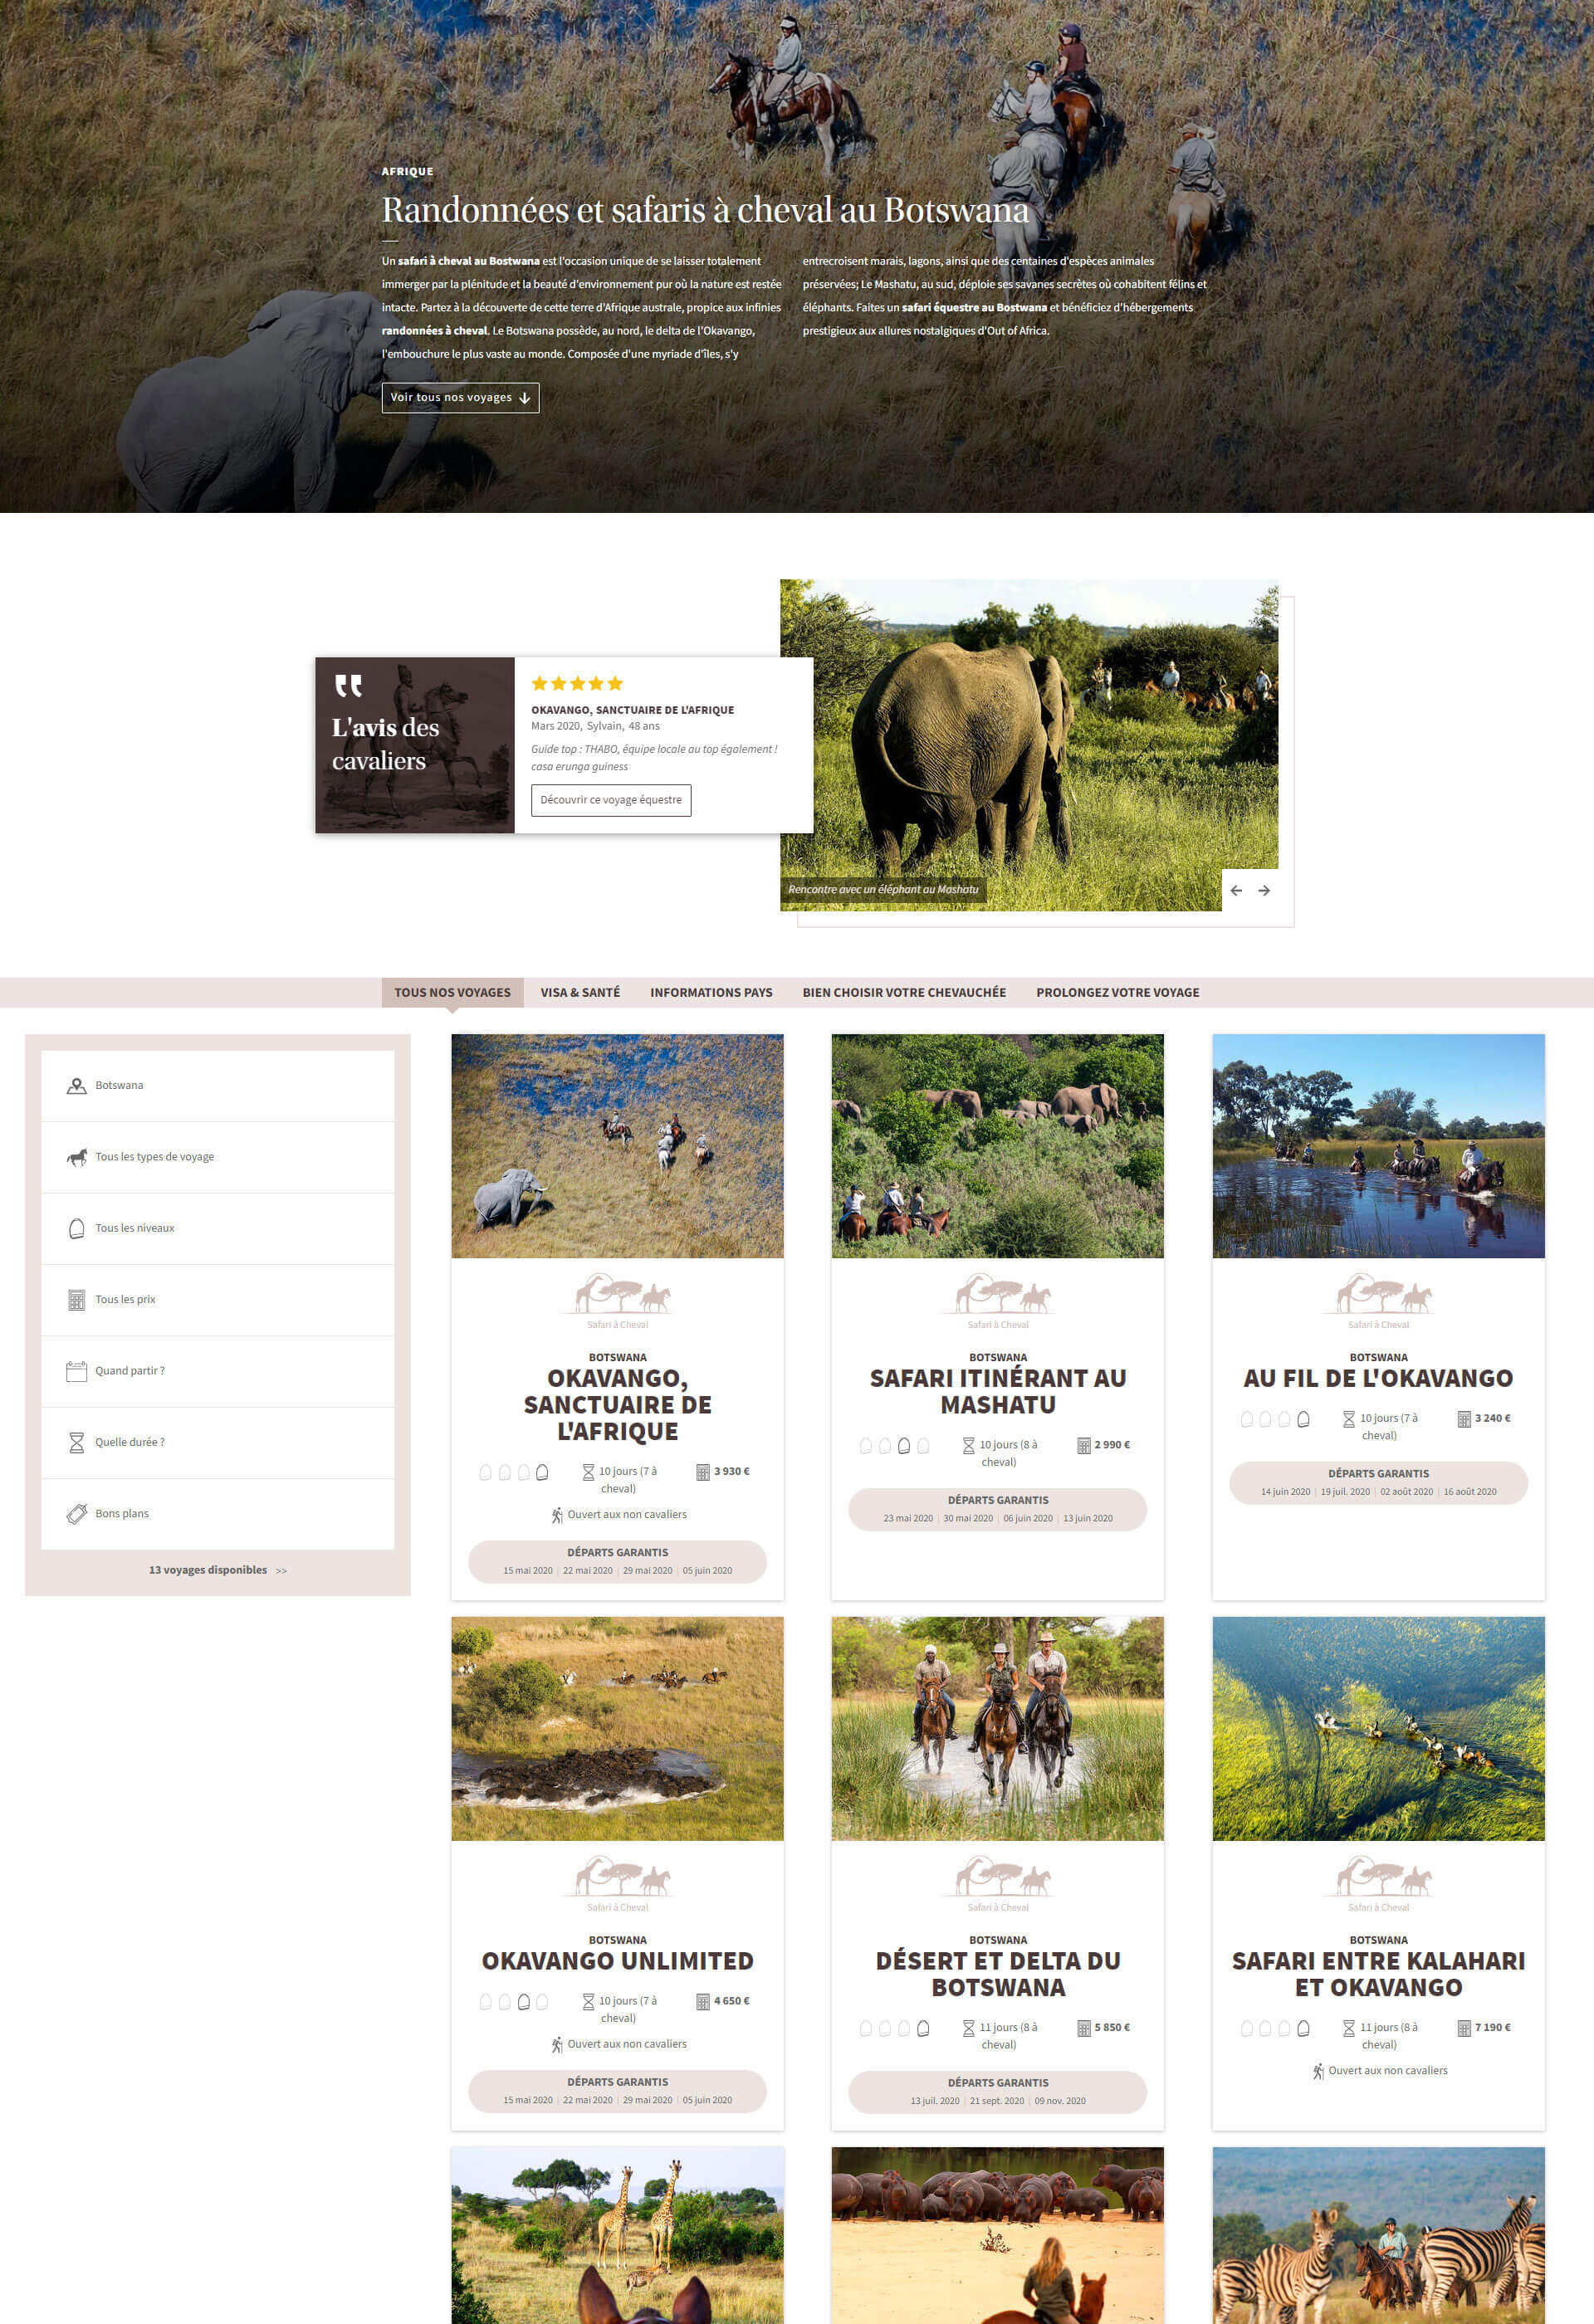 Cheval d'Aventure - Réalisation d'un site Internet e-commerce pour agence de voyages équestres en ligne